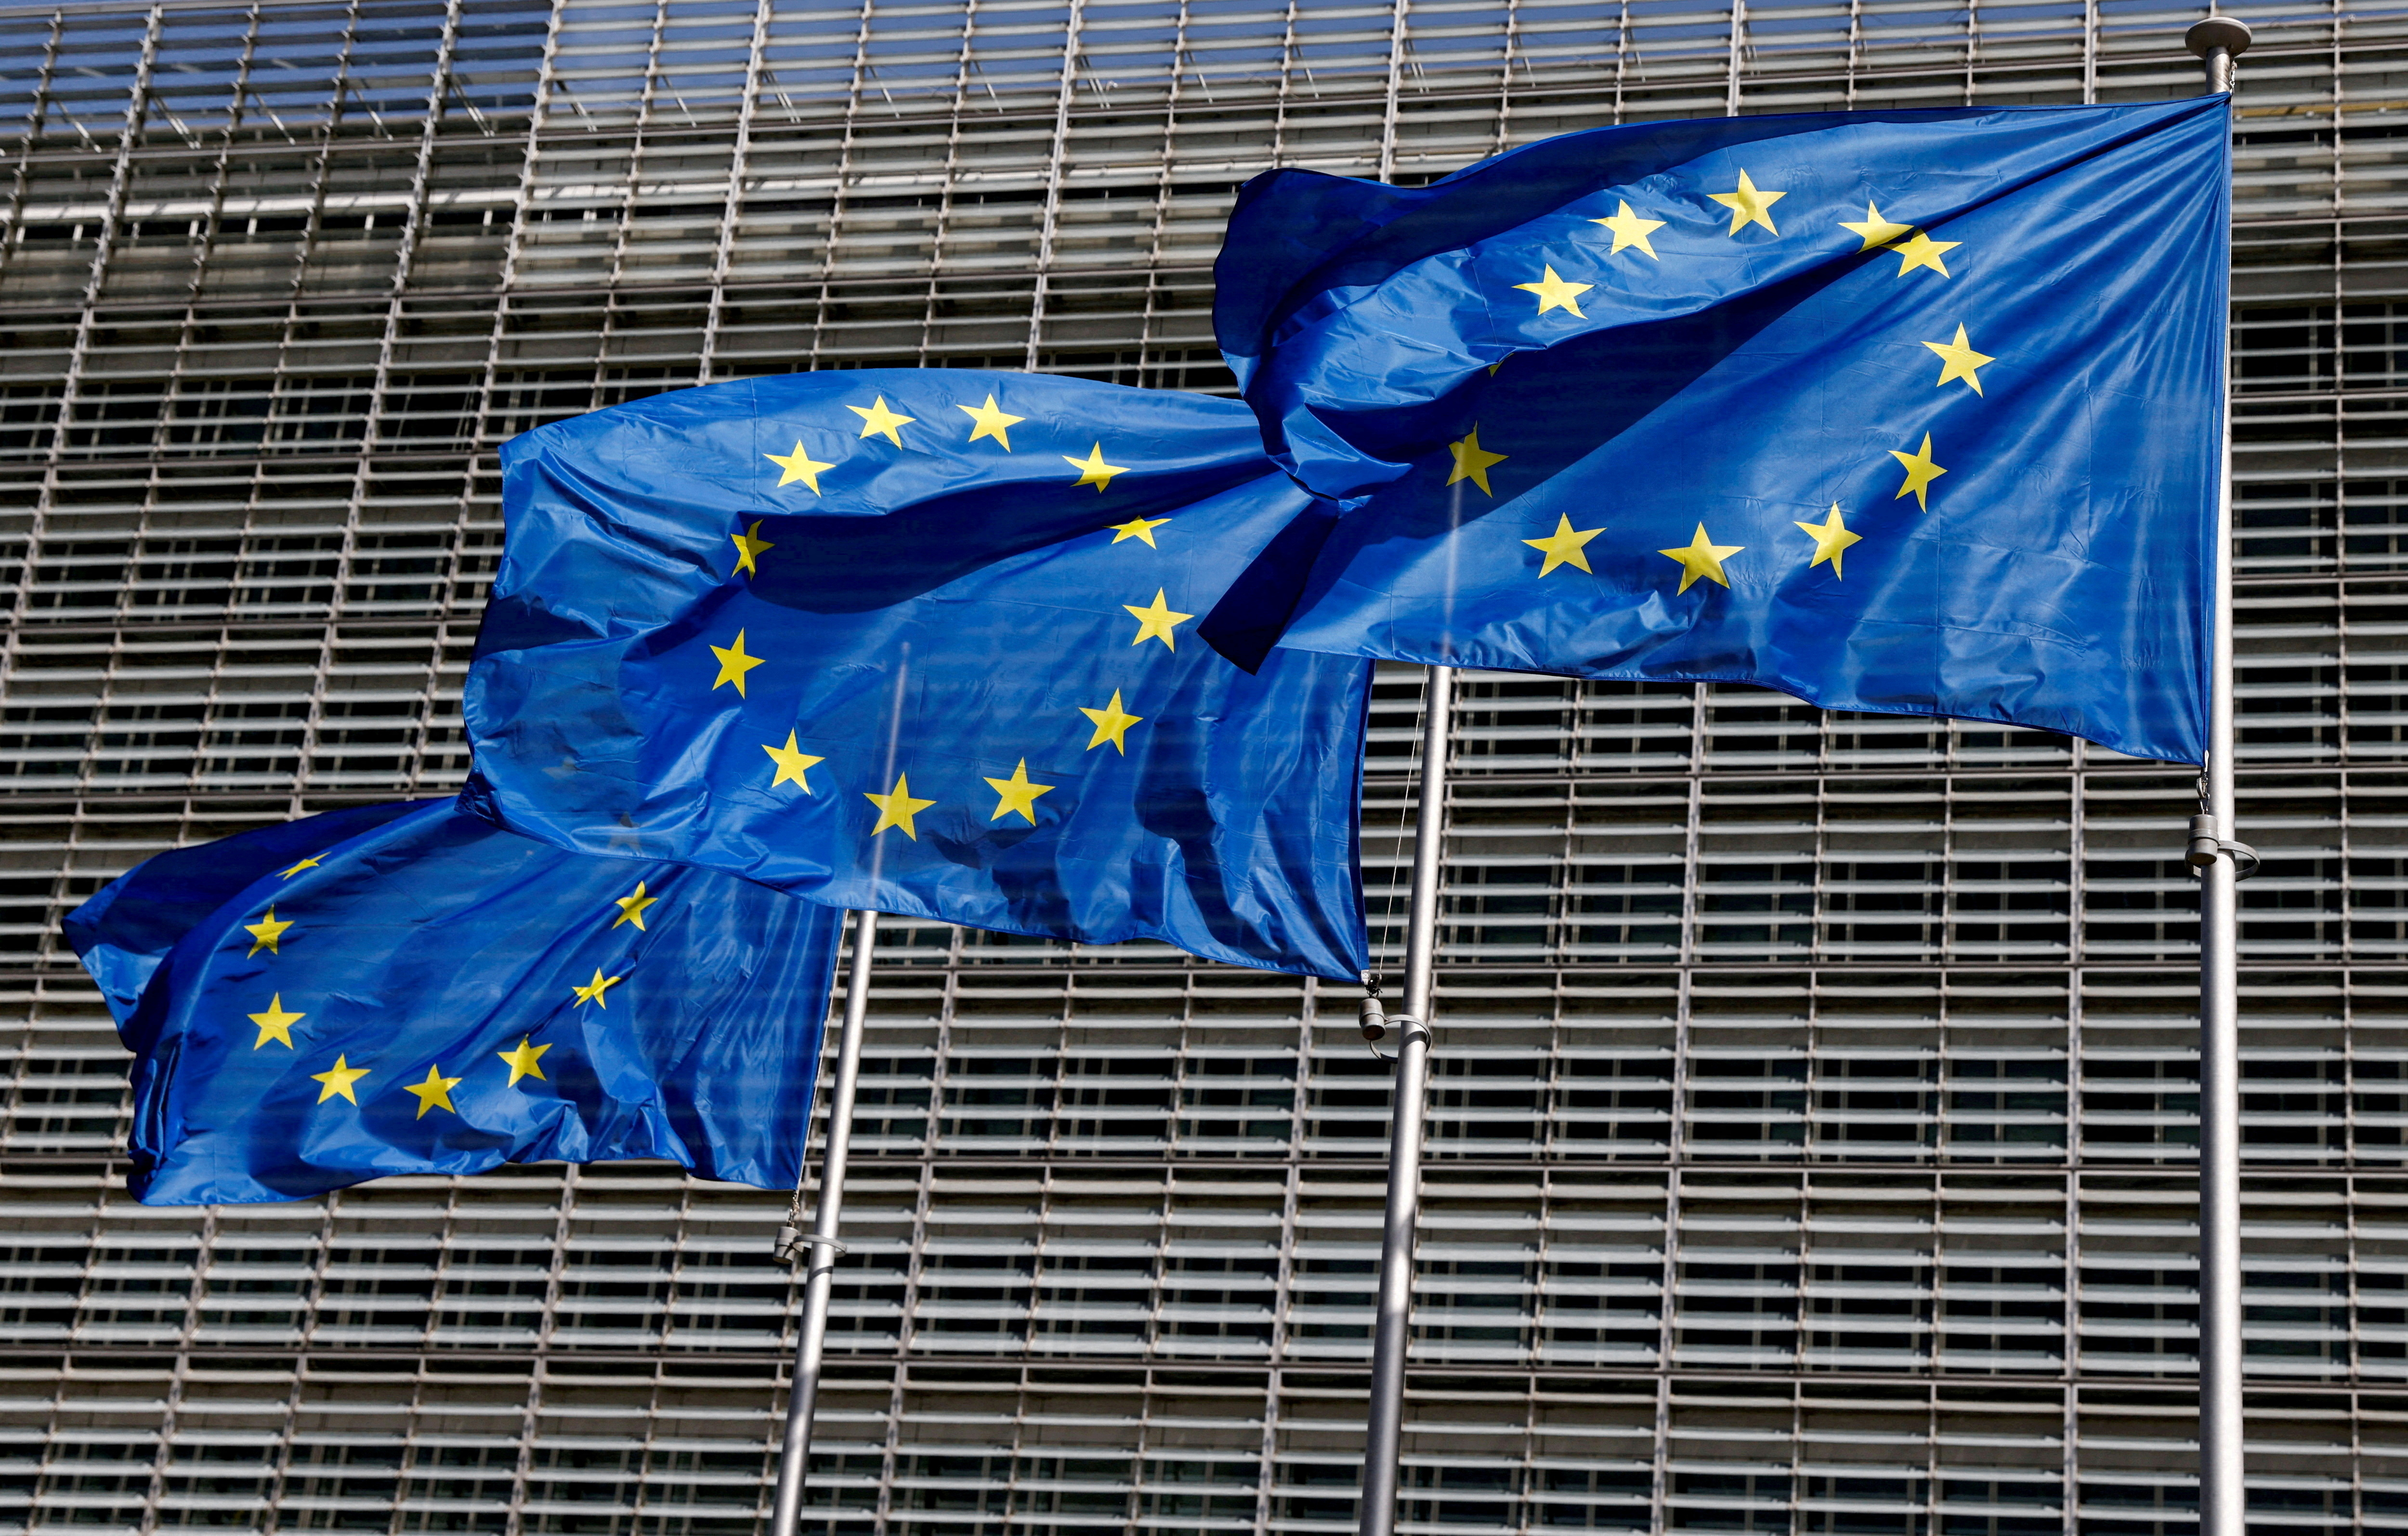 Subventions étrangères : l'Union européenne s'organise et instaure un contrôle a priori